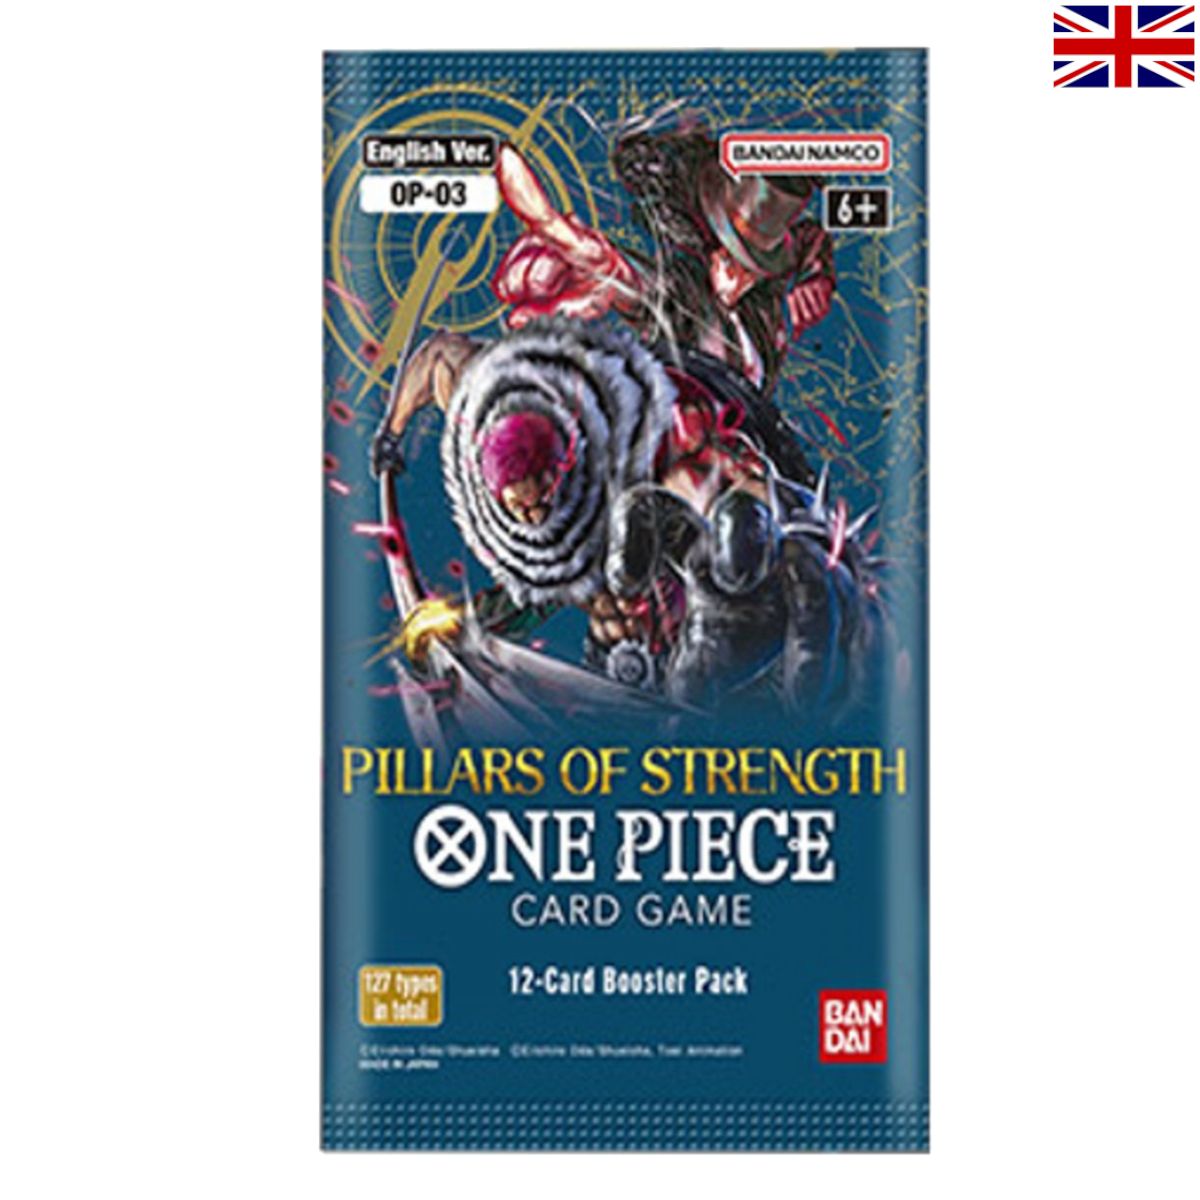 One Piece - Pillars of Strength OP-03 Booster Englisch